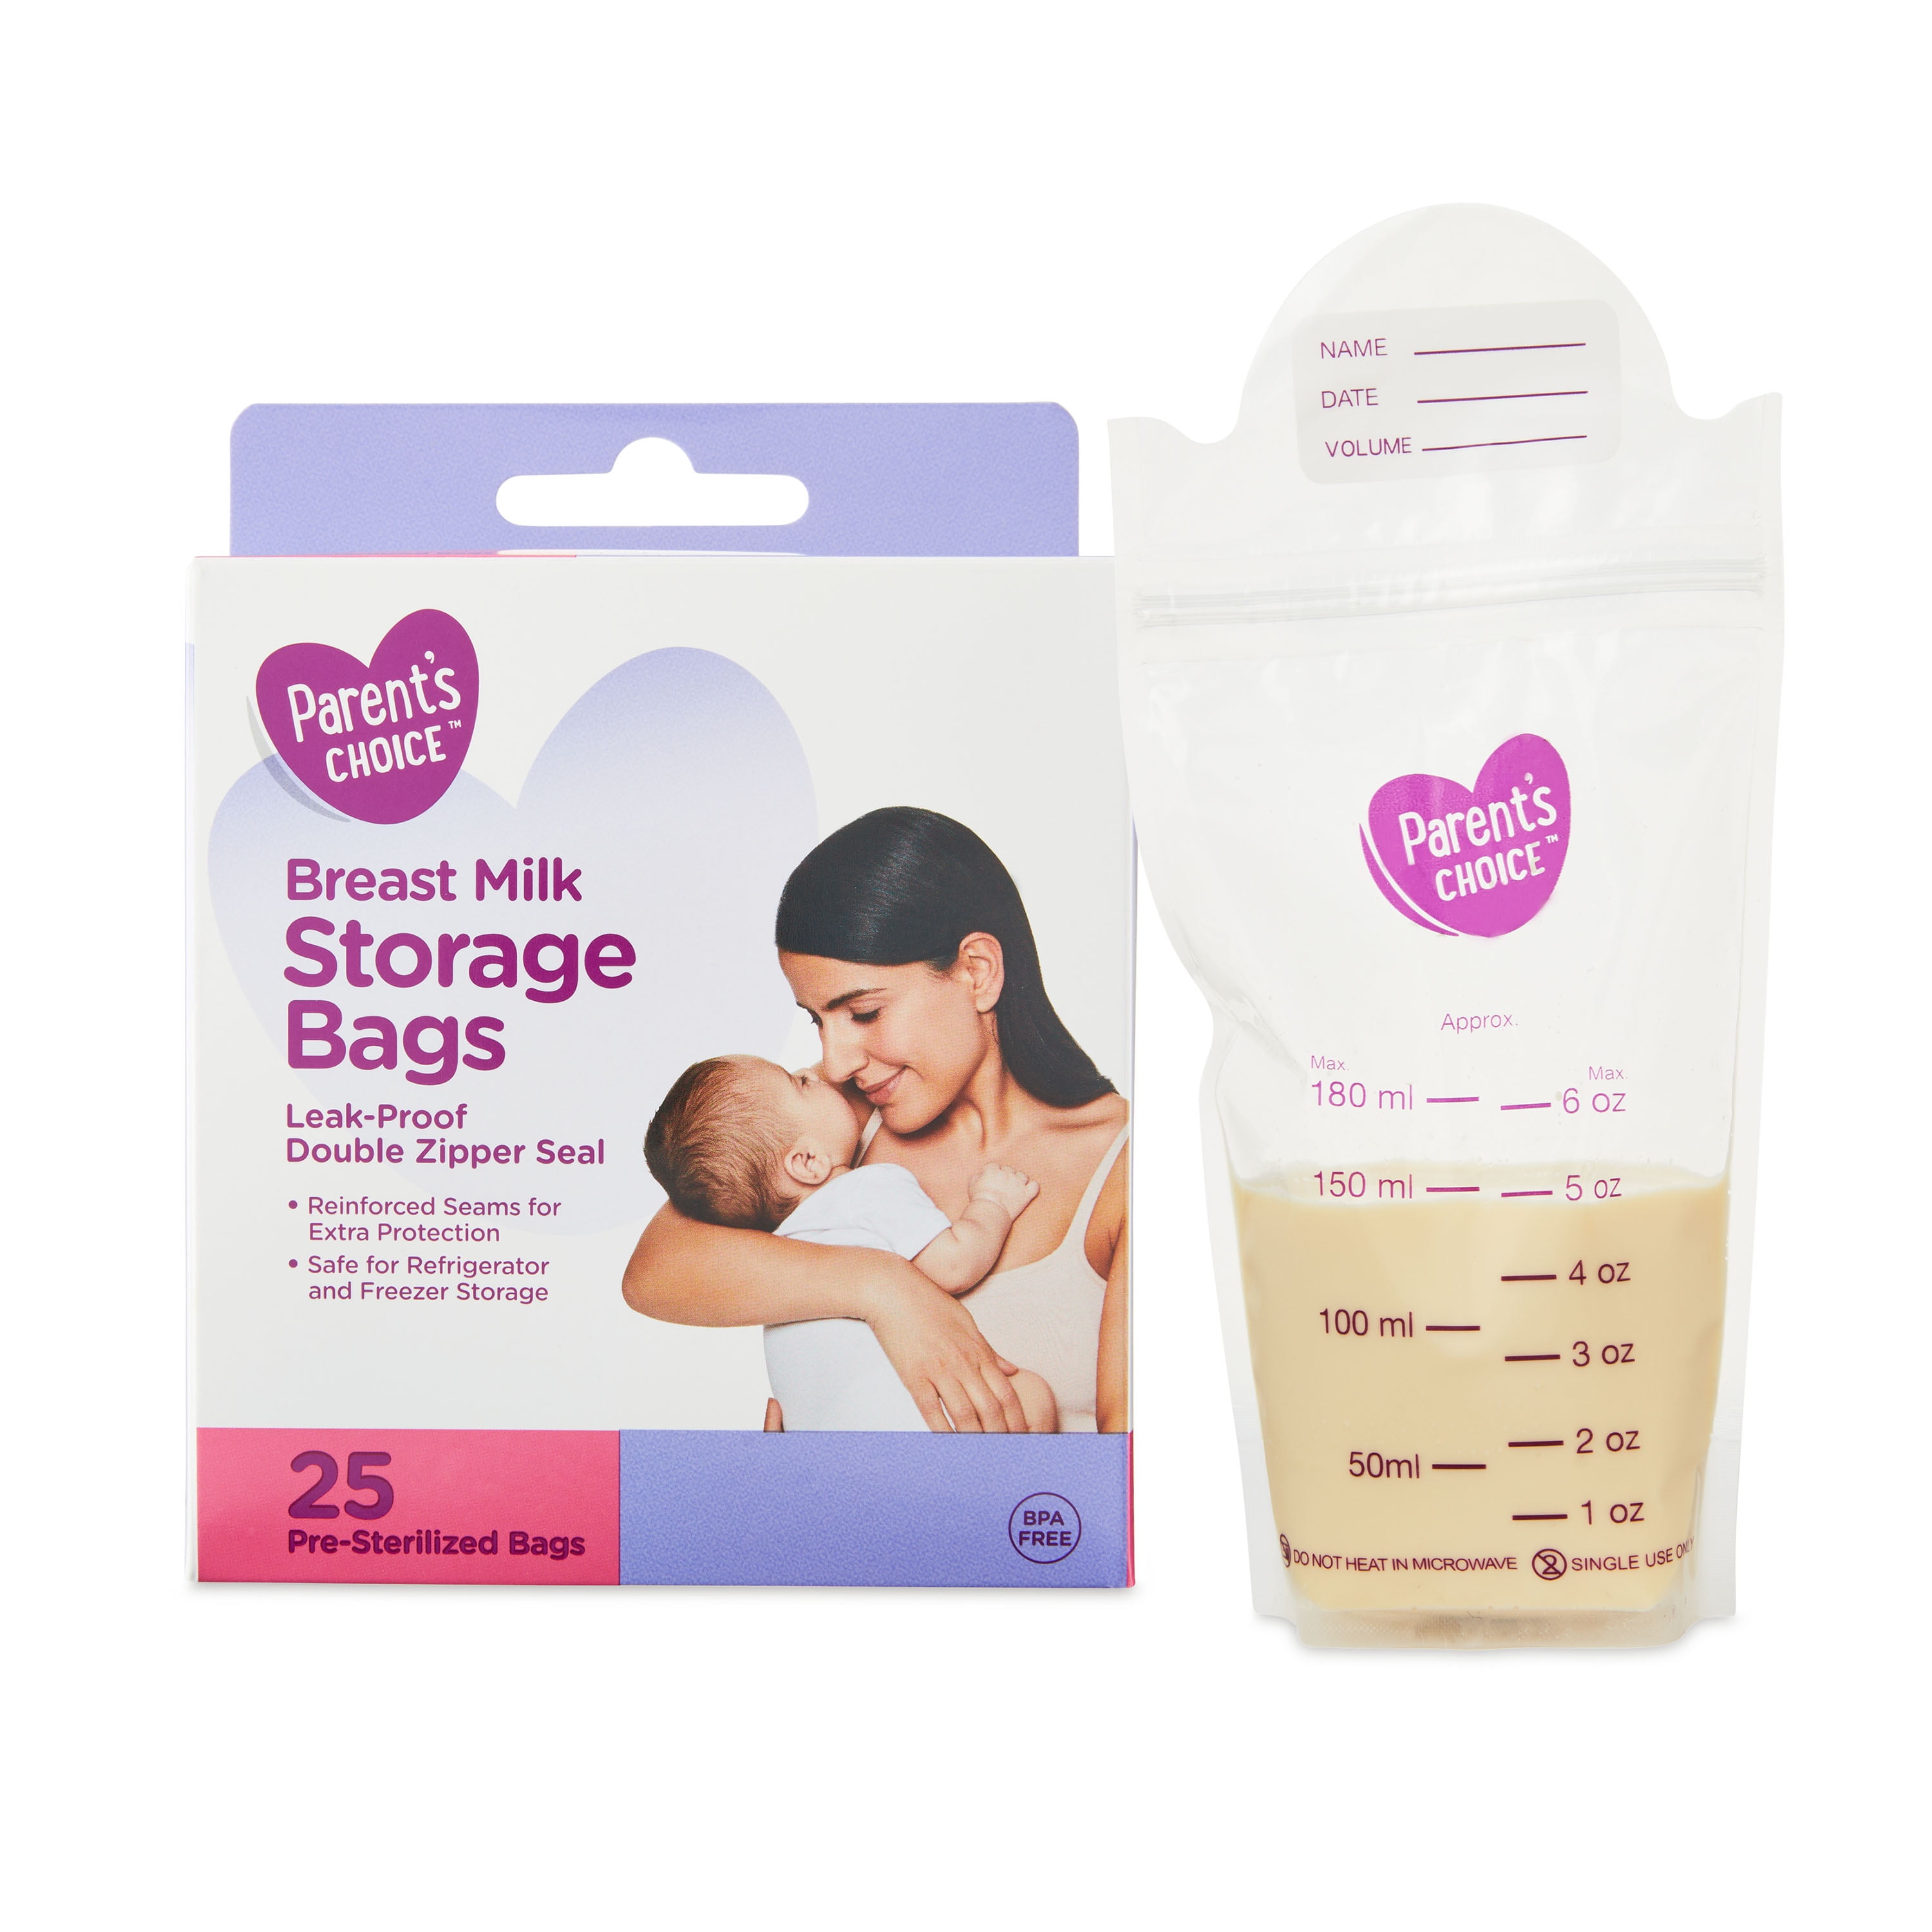 Breast Milk Storage Bags (25pk) – New Beginnings